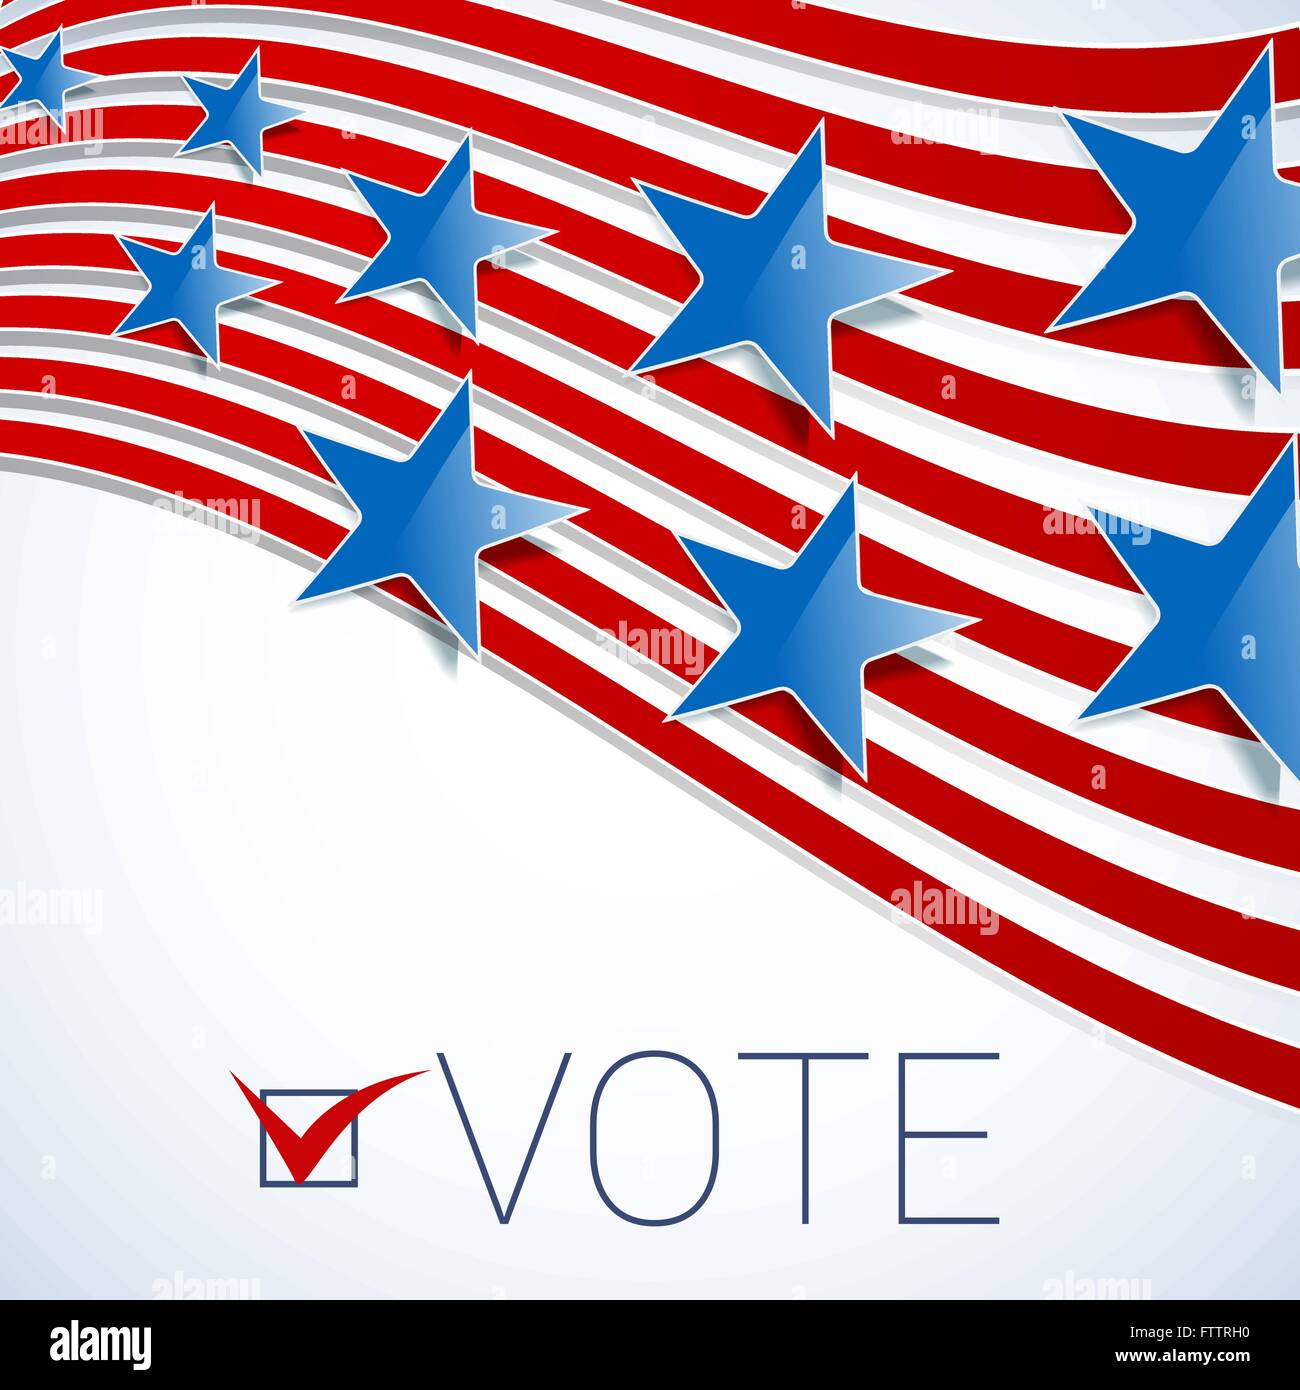 Vereinigte Staaten von Amerika abstrakt Flagge mit roten Streifen und blaue Sterne als Wahl-Design-Hintergrund. Vektor Stock Vektor